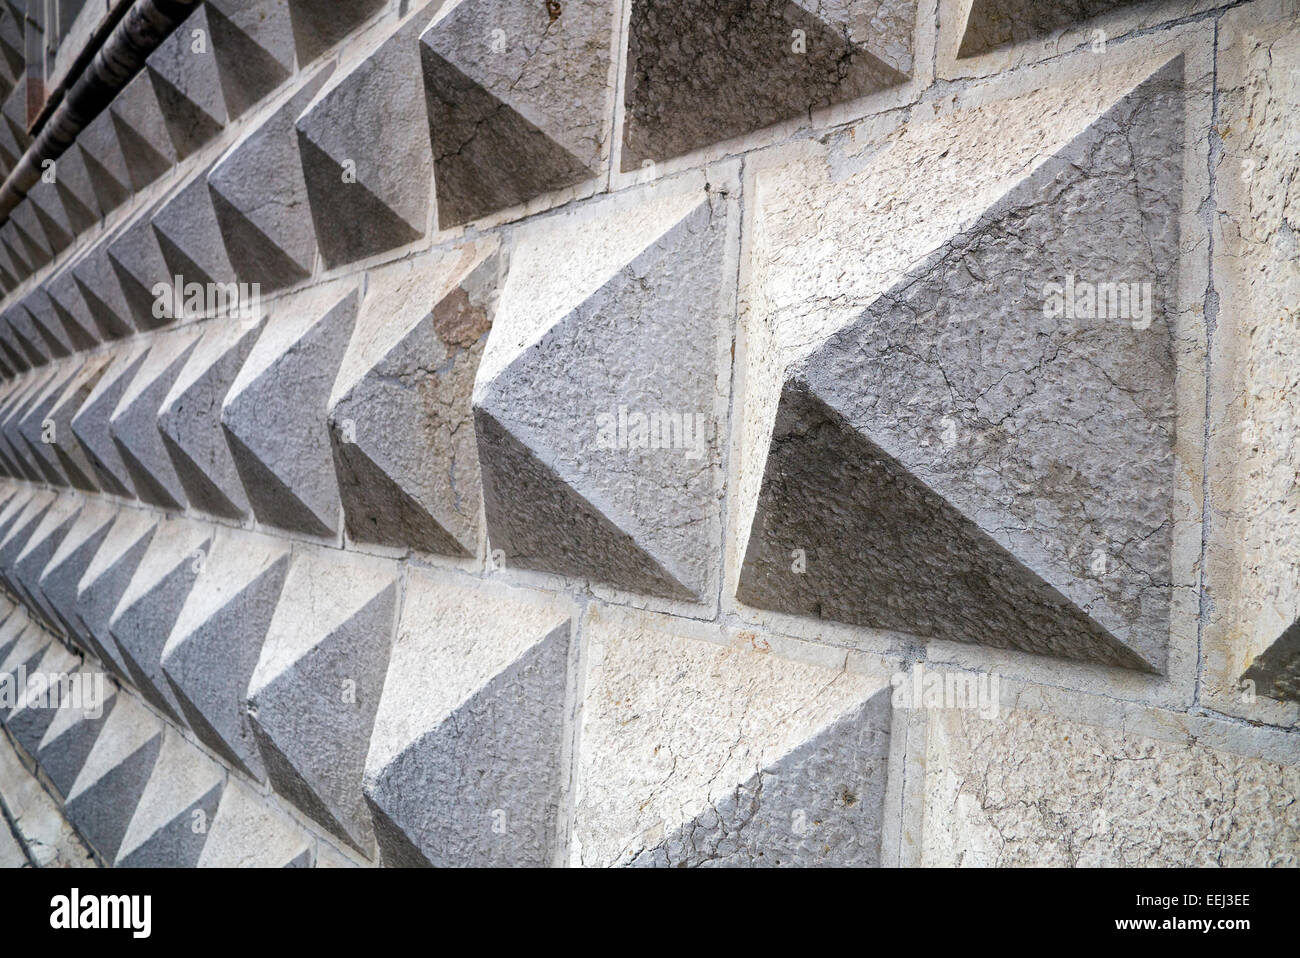 Blocchi di marmo su una parete del Palazzo dei Diamanti di Ferrara, Italia. Il Palazzo, un palazzo rinascimentale è un museo d'arte. Foto Stock